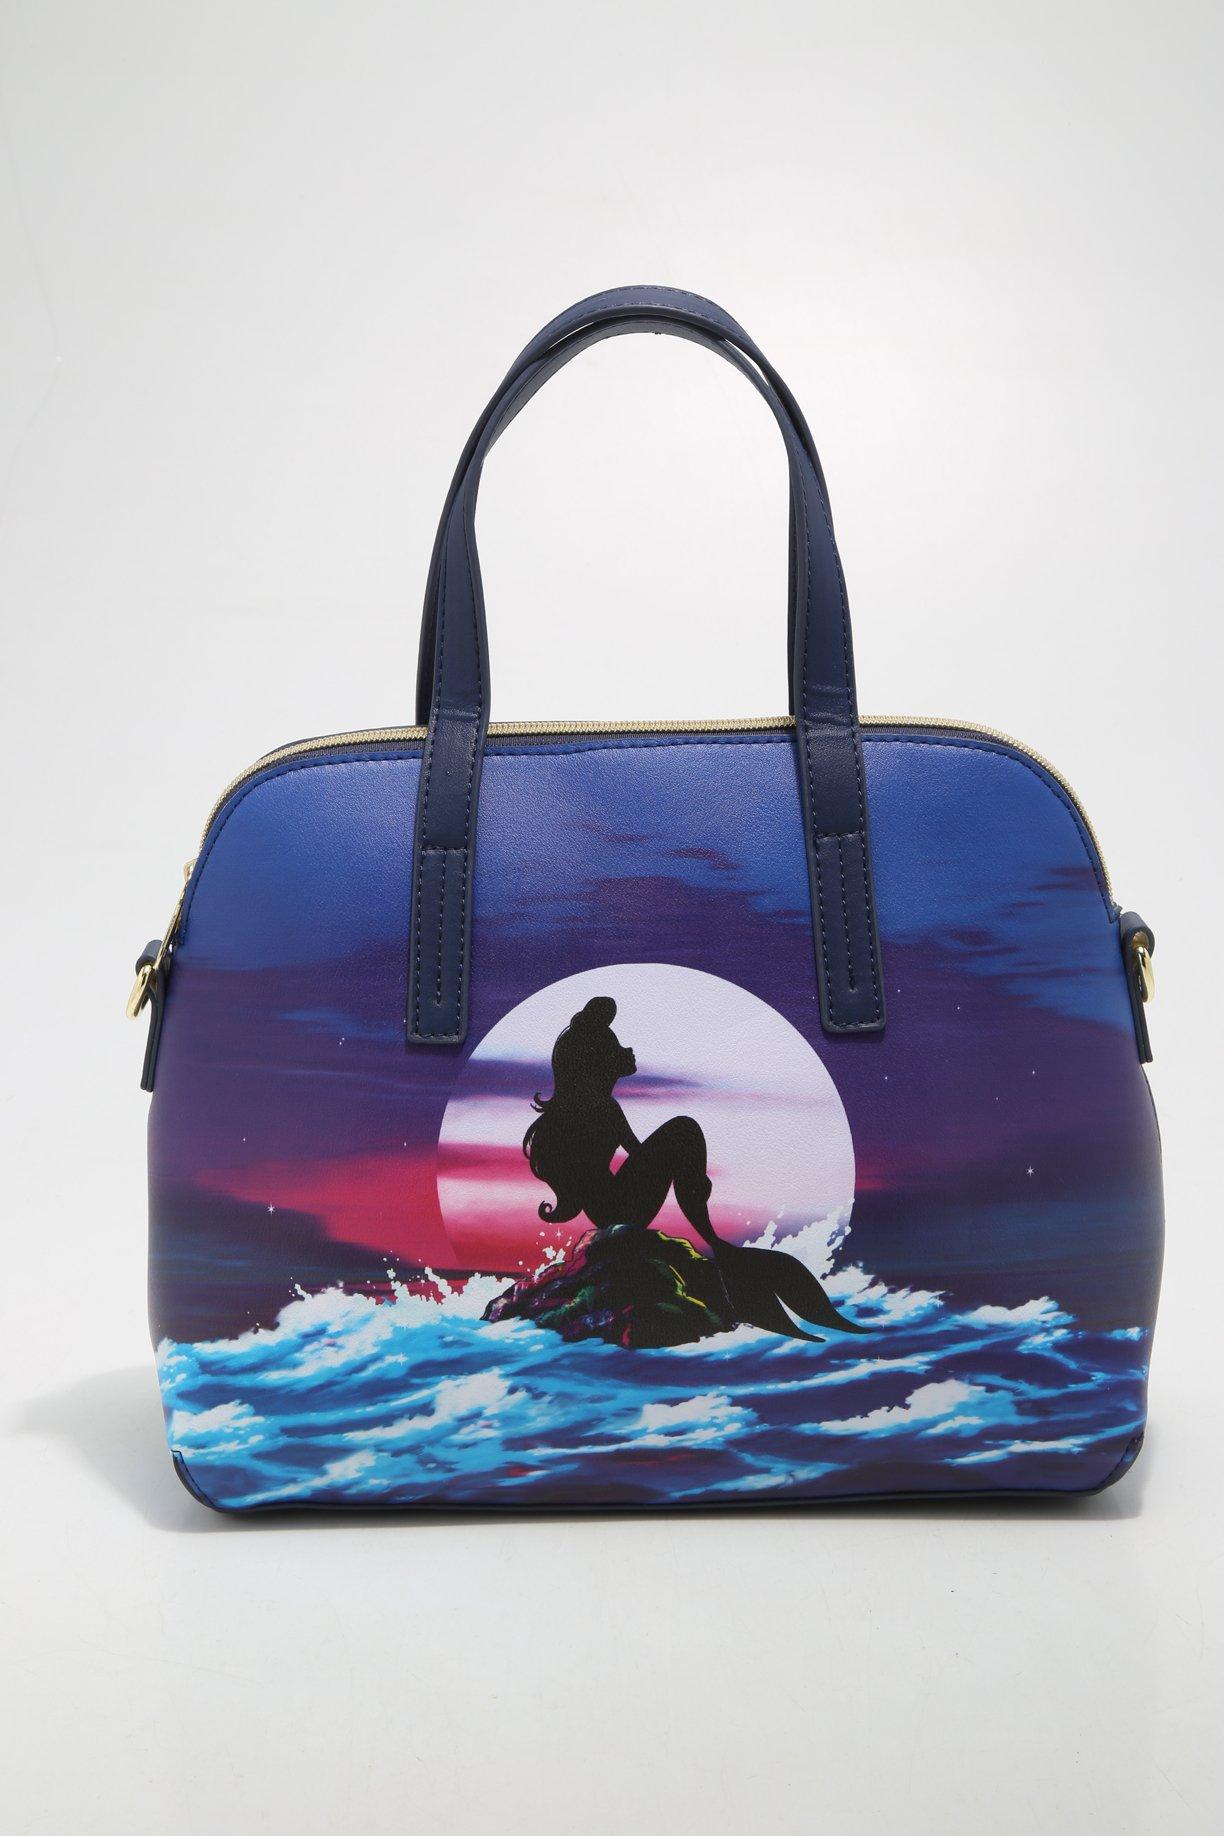 Mermaid Off Duty Tote Bag Mermaid Fan Tote Bag Swimming Bag Mermaid Gift 